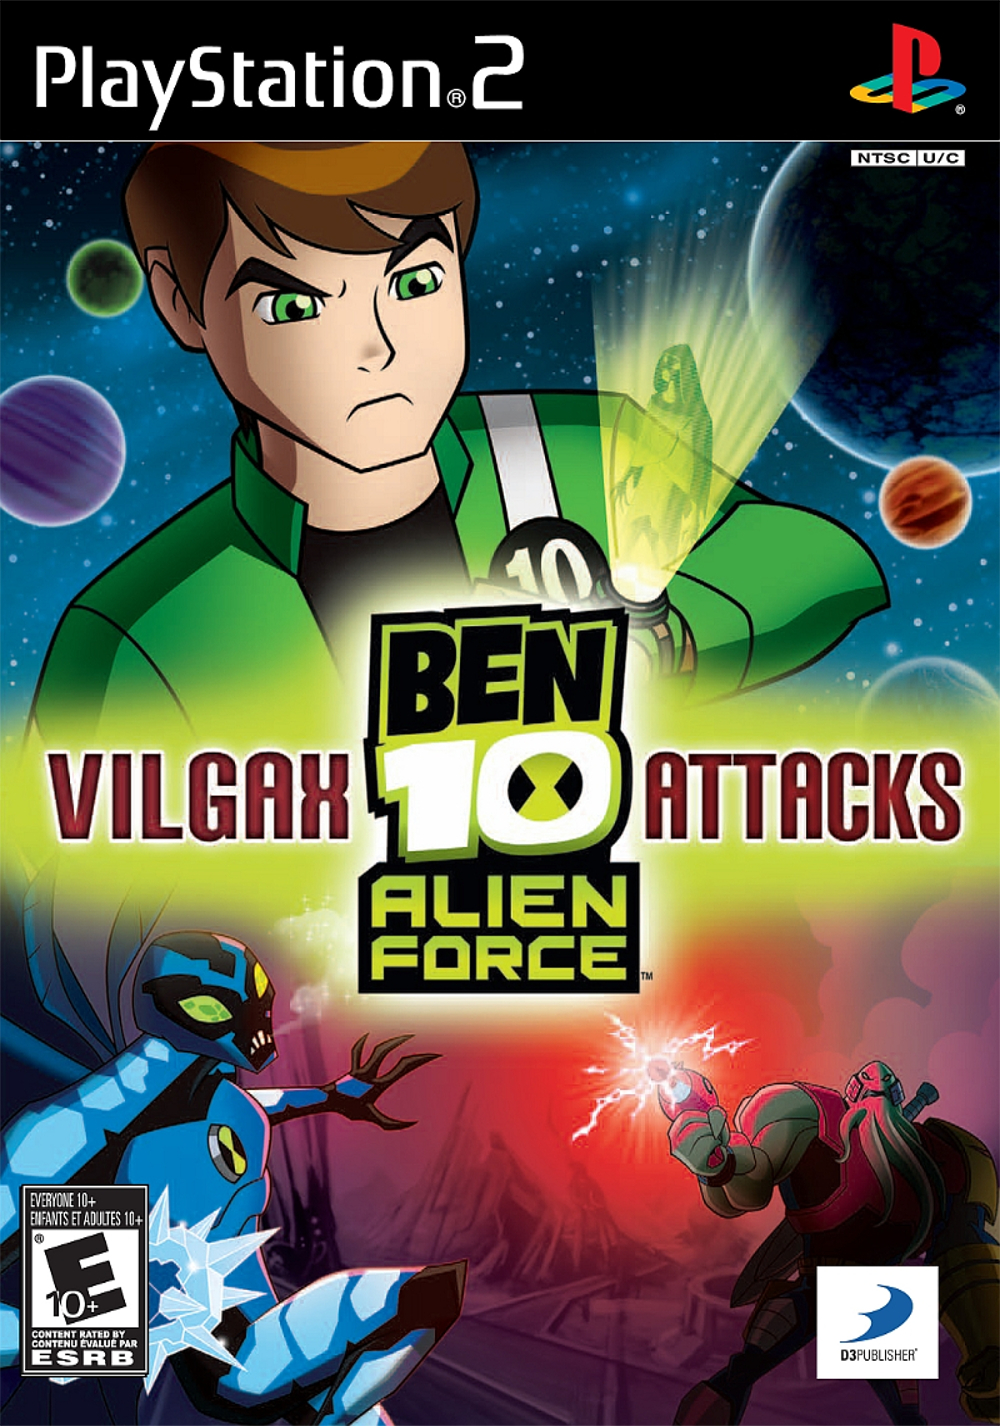 ben 10 alien force vilgax attacks full episode 1